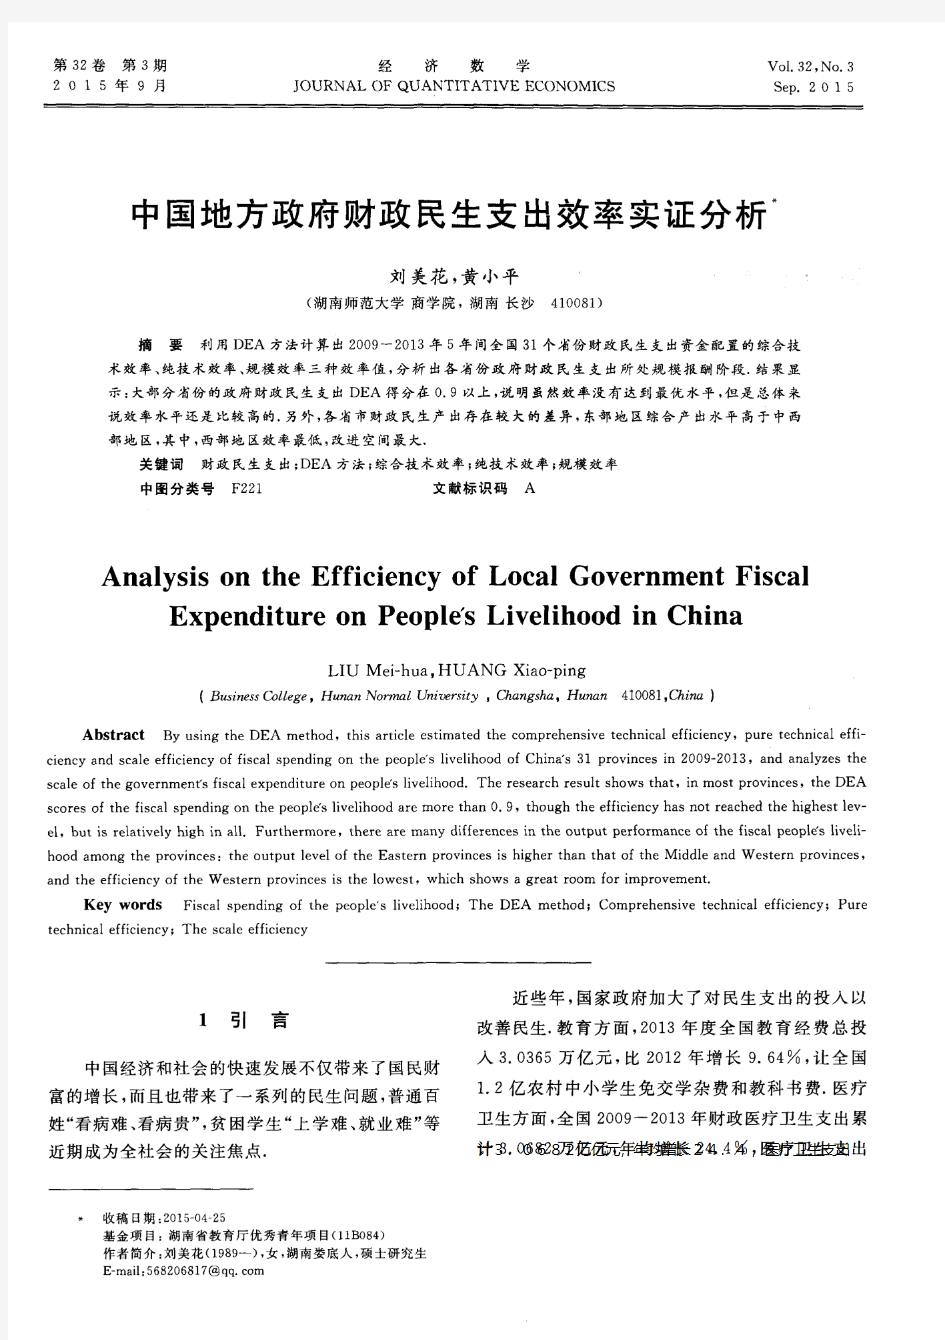 中国地方政府财政民生支出效率实证分析